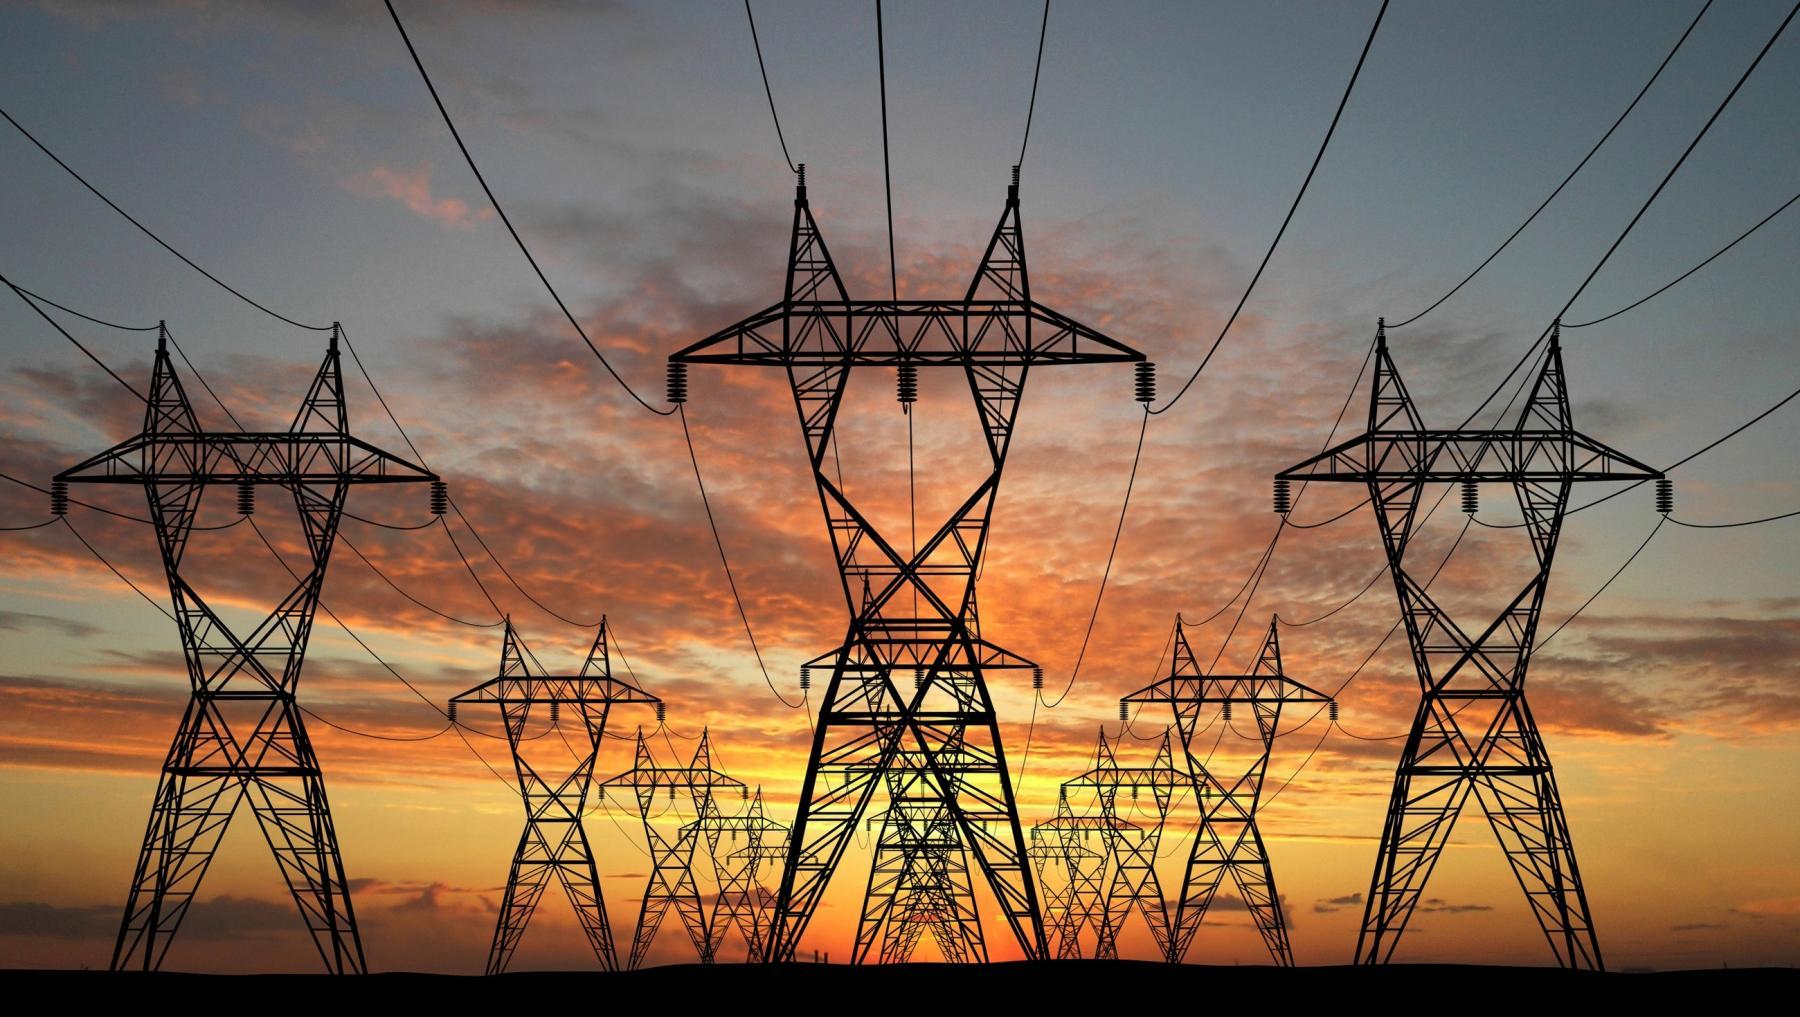 Ürdün-Suudi Arabistan elektrik bağlantı projesinin 2025’te tamamlanması bekleniyor